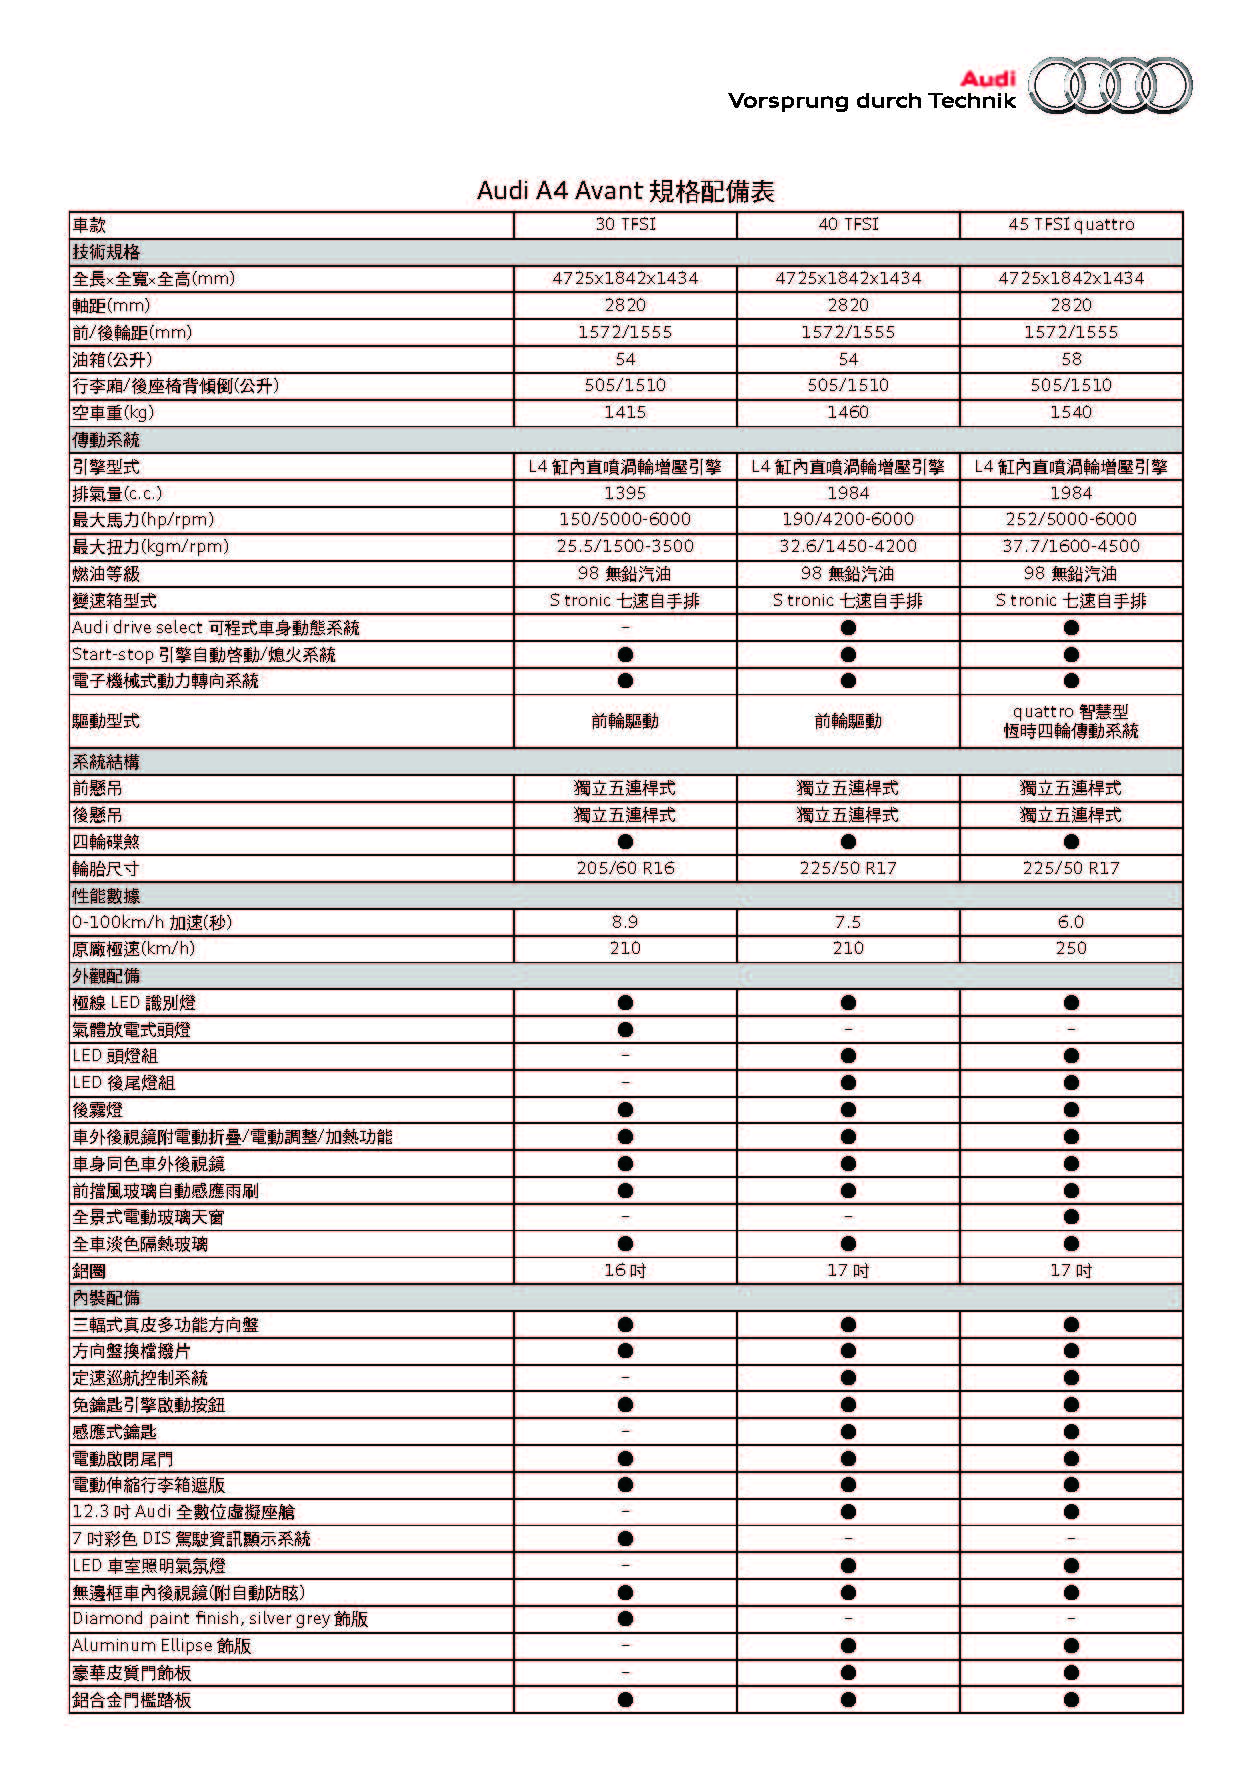 Audi A4 Avant 規格配備表_頁面_1